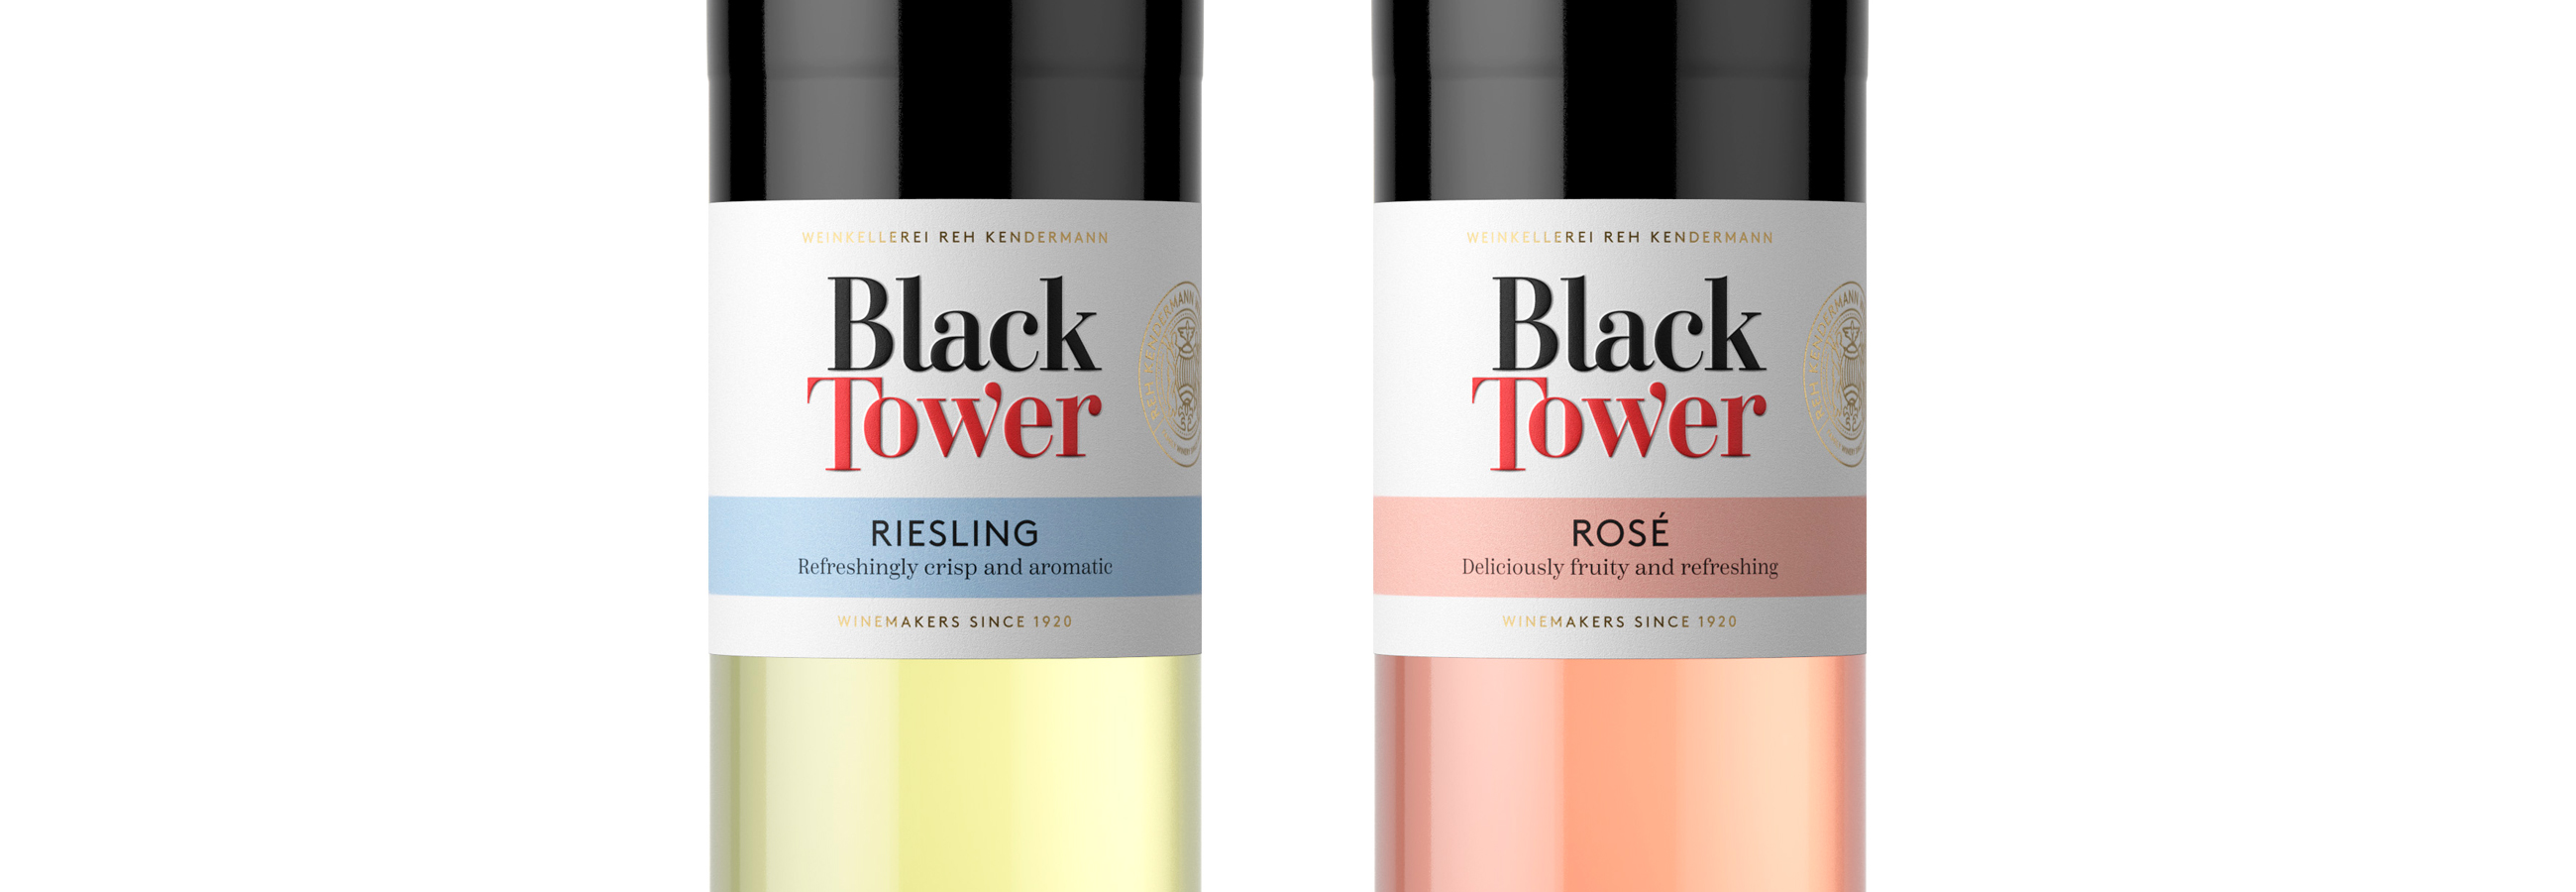 Black Tower redesign merkevare og pakningsdesign vist på etiketter på vinflasker packaging design and brand on labels of wine bottles